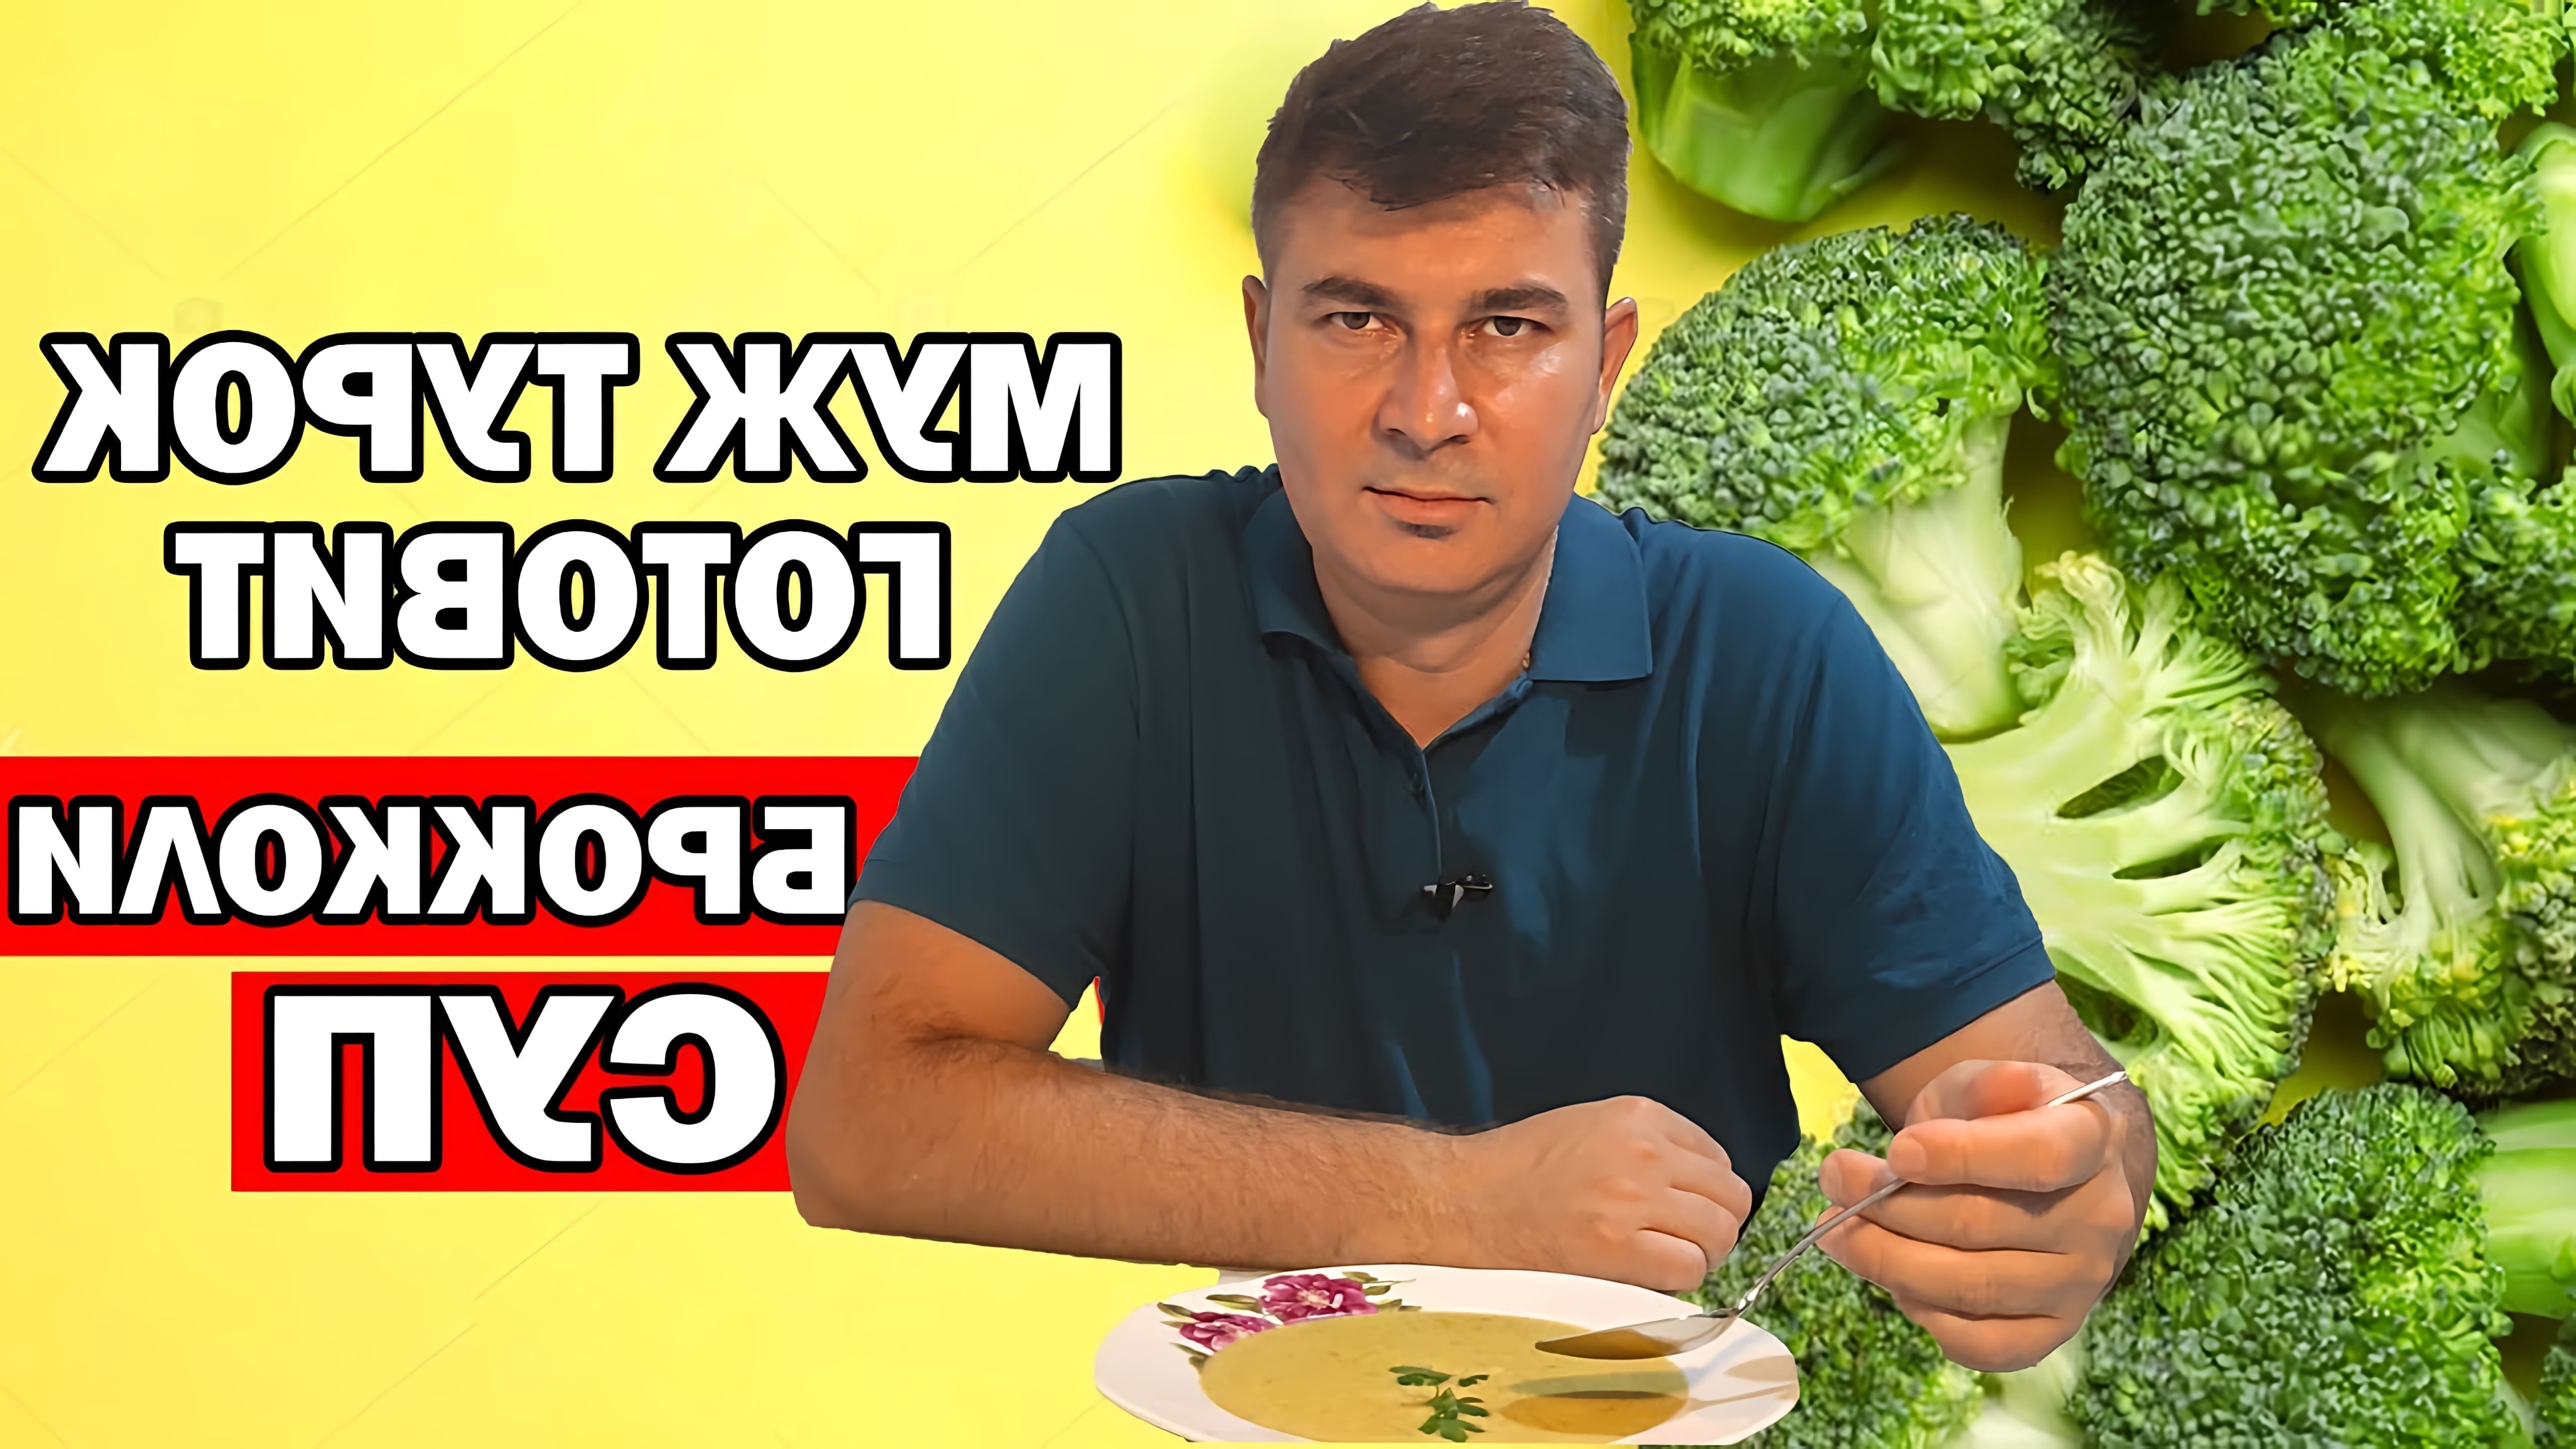 В этом видео мужчина-турок рассказывает о том, как он готовит суп из брокколи